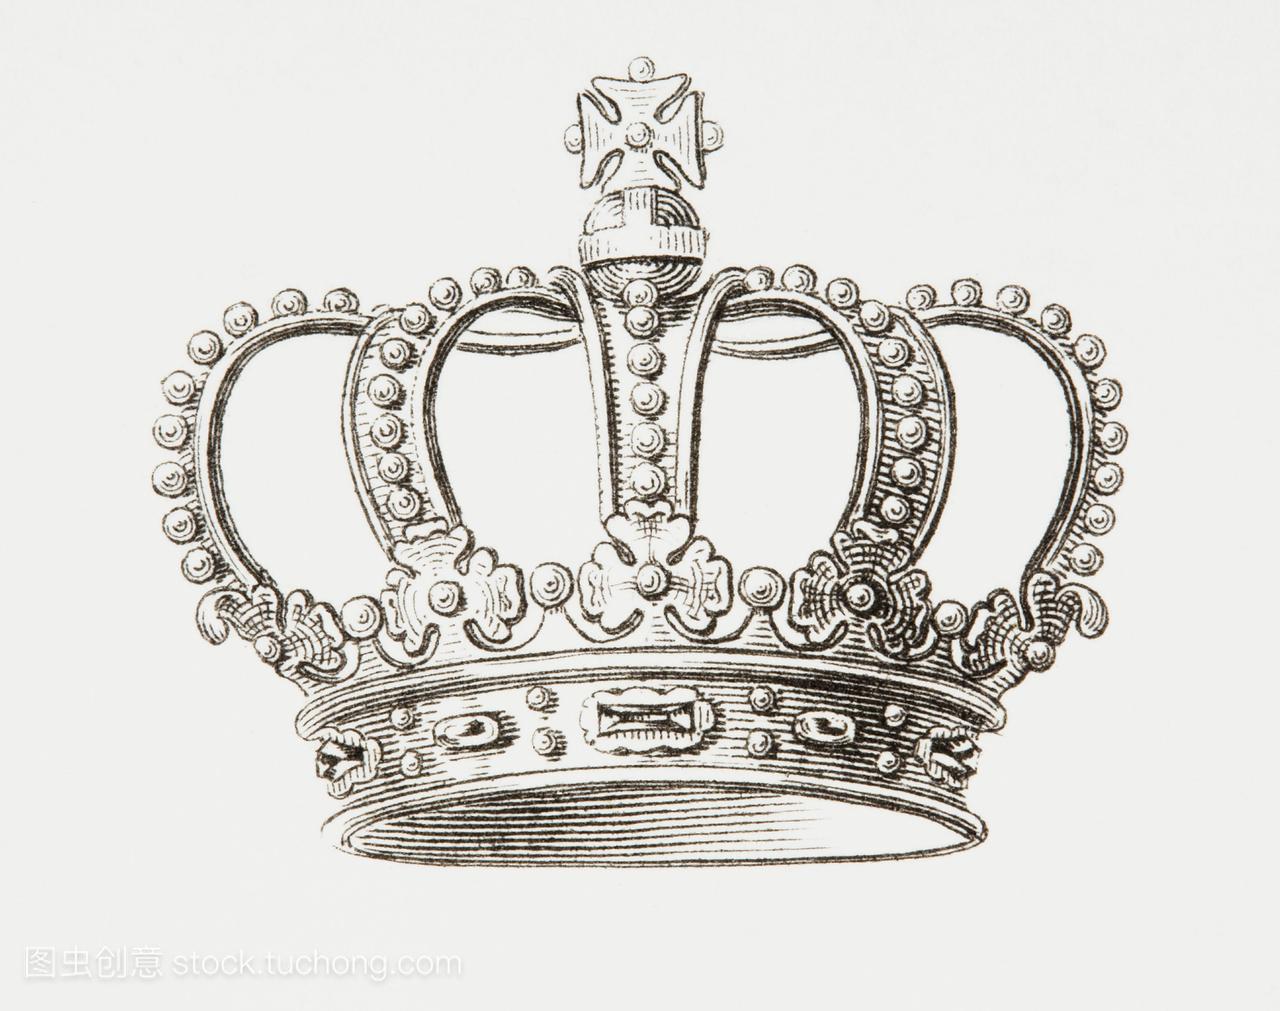 荷兰王国的王冠。来自《百科全书》或《世界艺